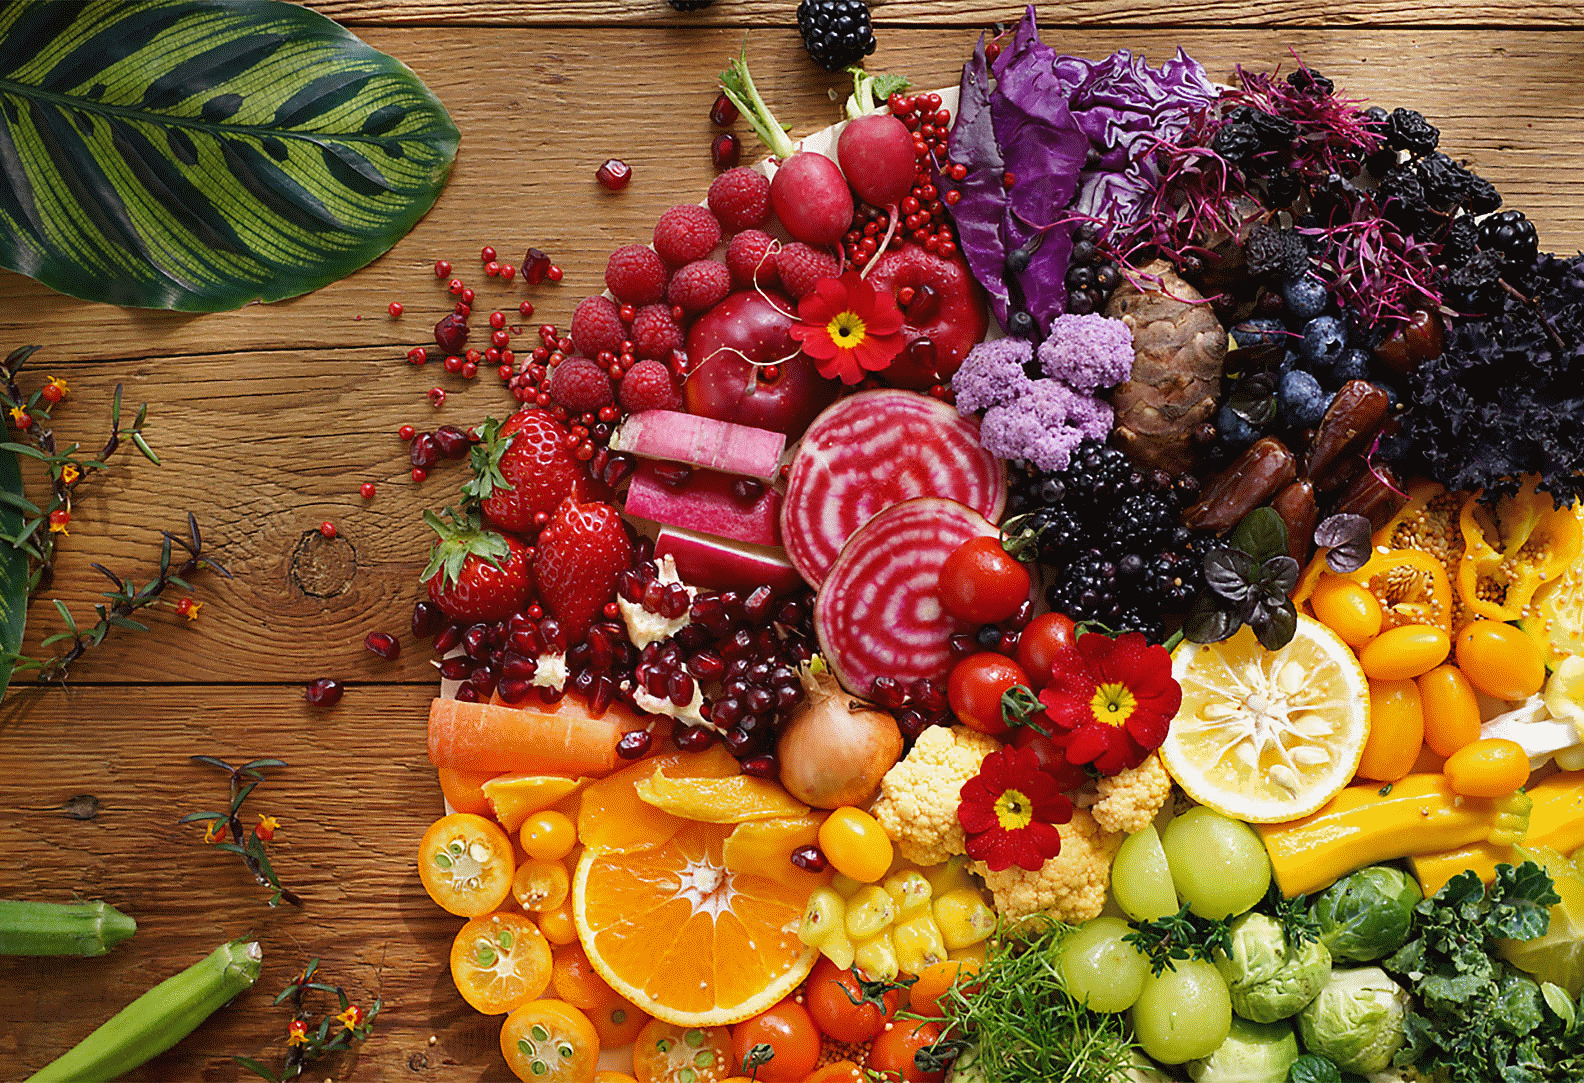 Яркое изображение фруктов и овощей, снятое с помощью этого объектива с высоким разрешением в любой точке